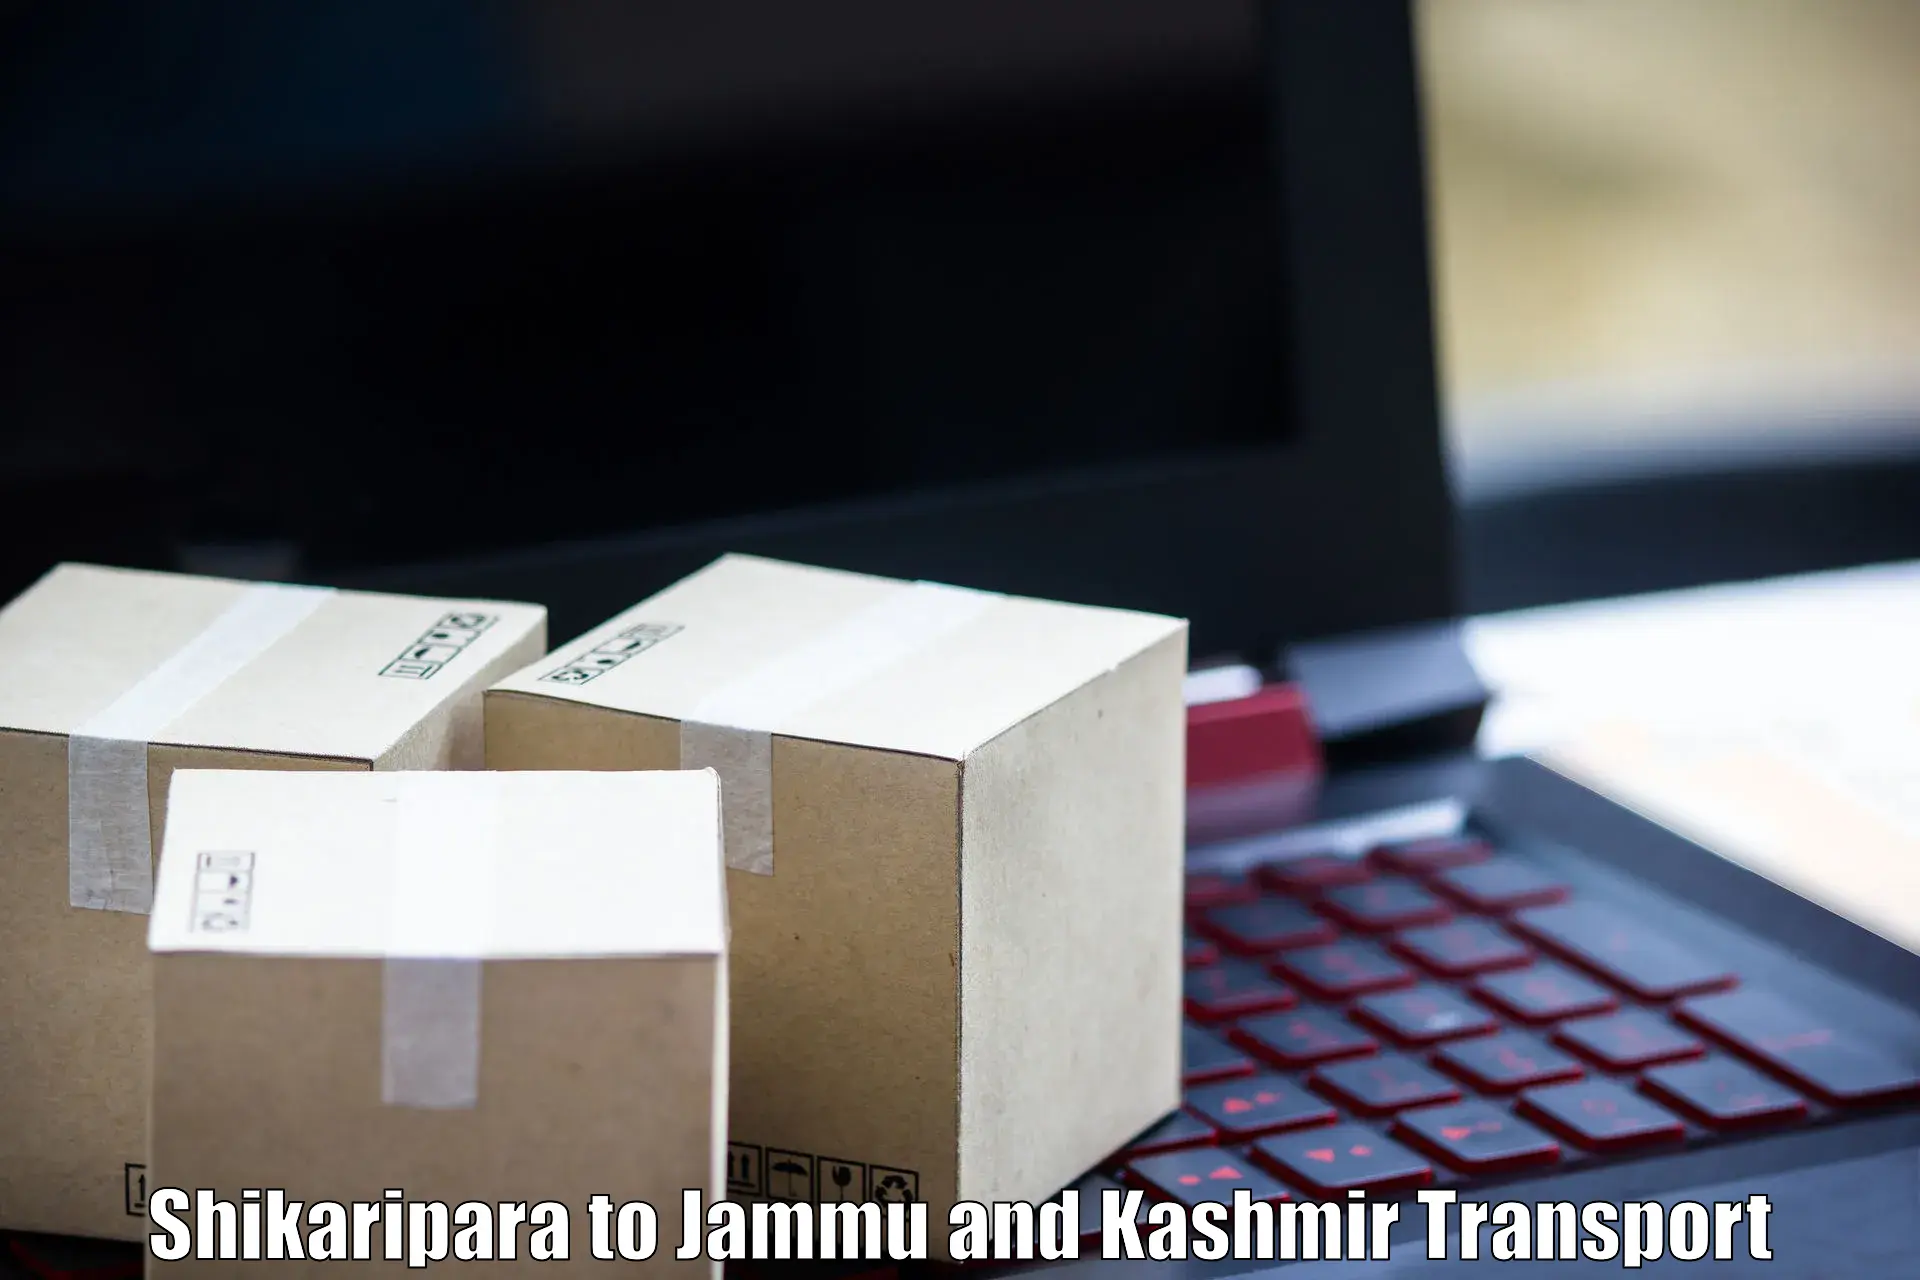 Land transport services Shikaripara to IIT Jammu